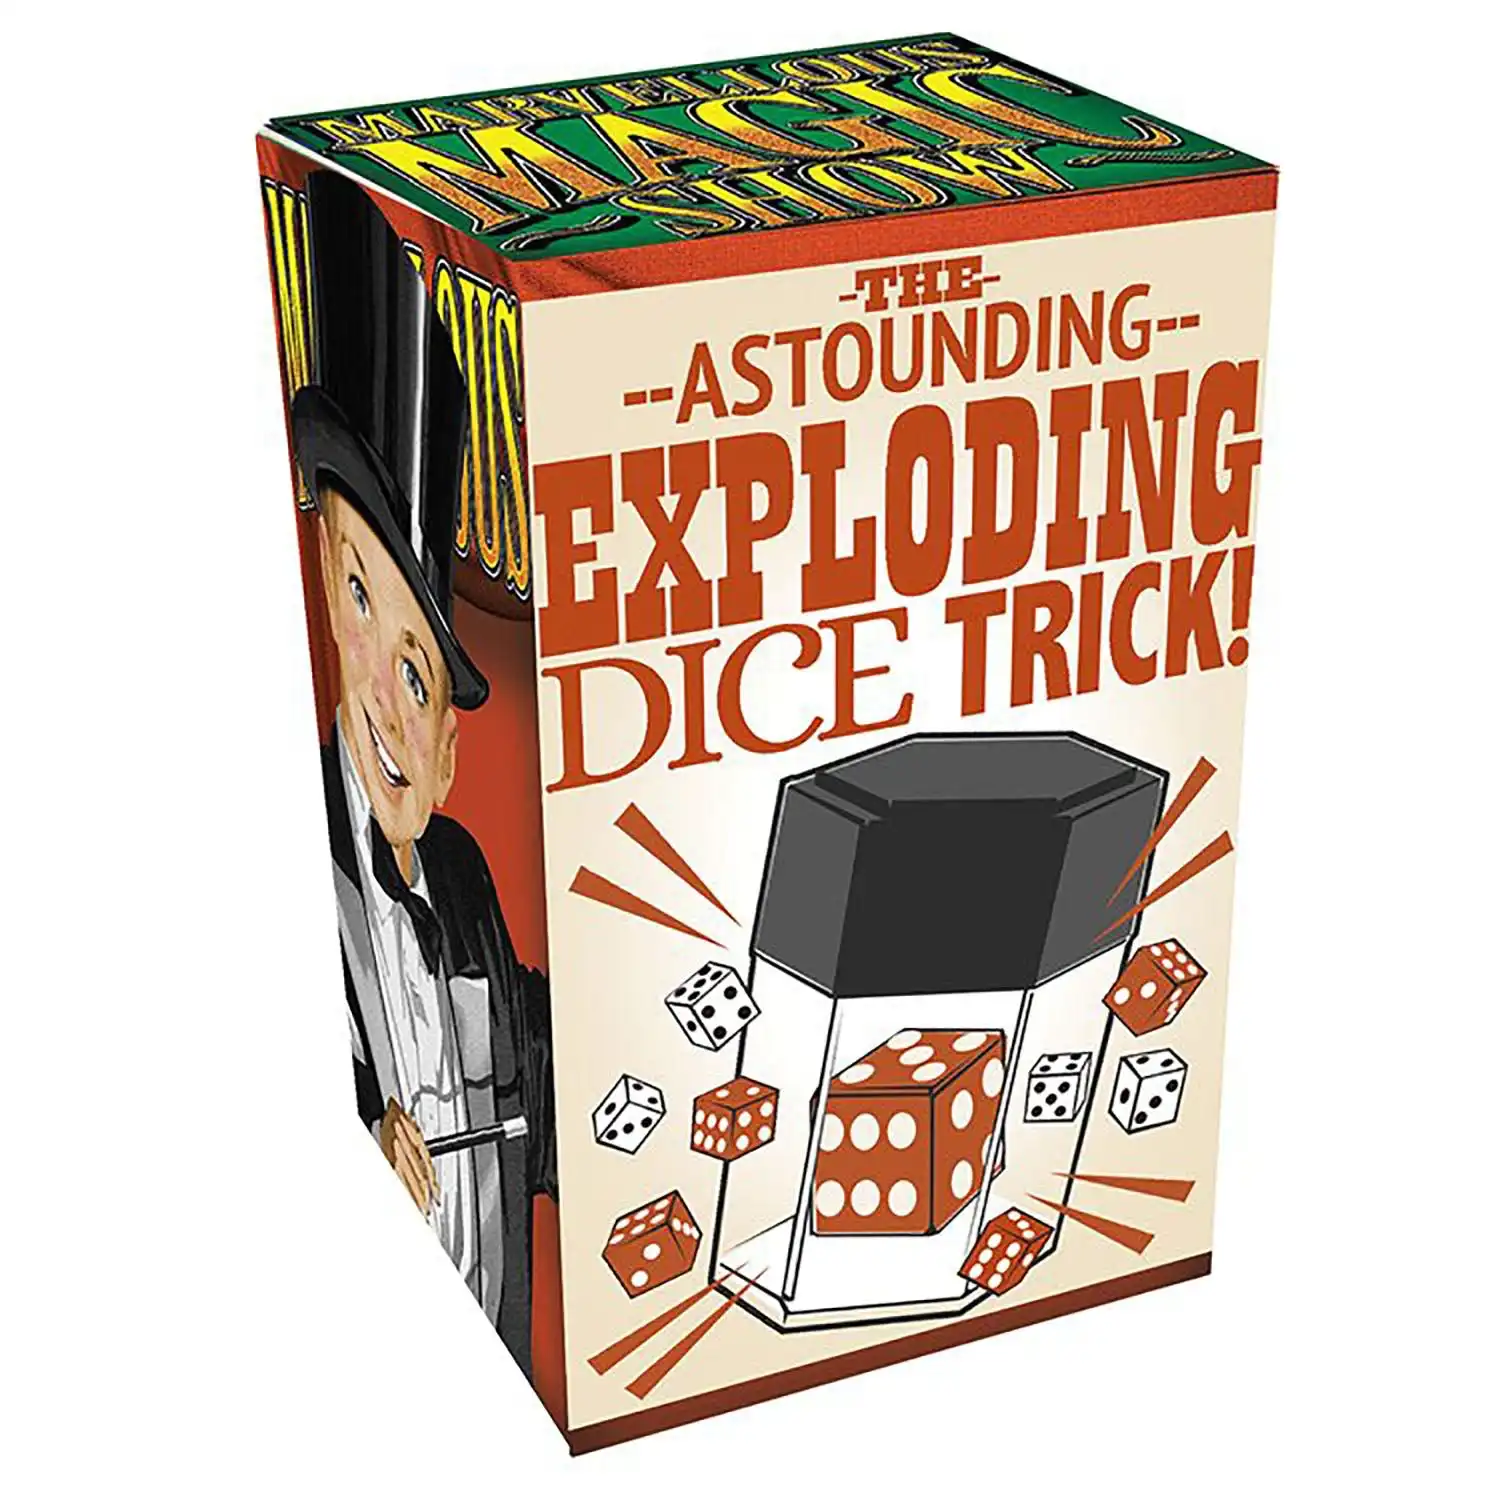 Magic Trick - Exploding Dice